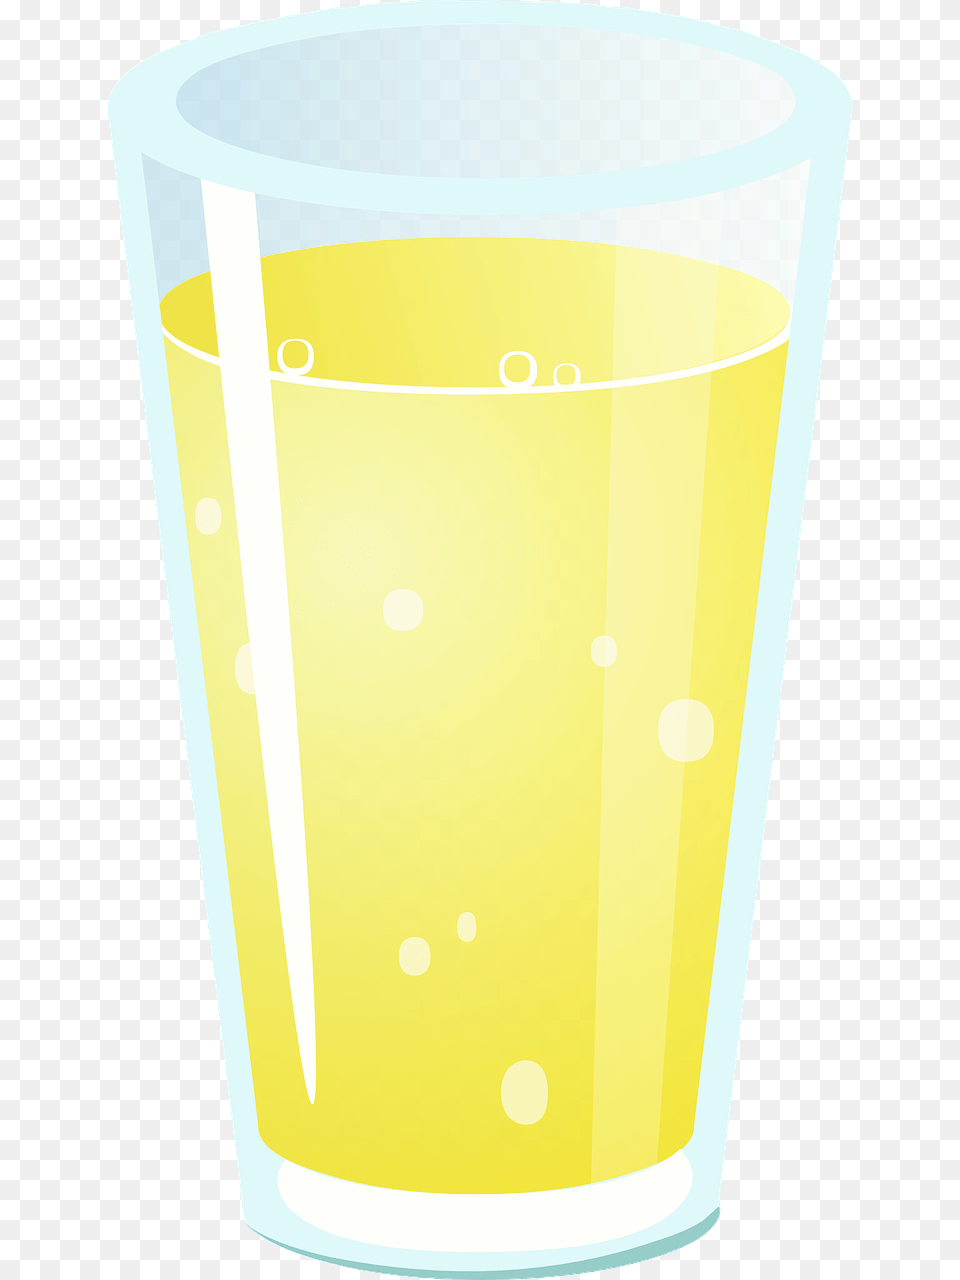 Imagen De Un Vaso Con Forma De Tronco De Cono Objetos En Forma De Cilindro, Beverage, Glass, Juice, Cup Png